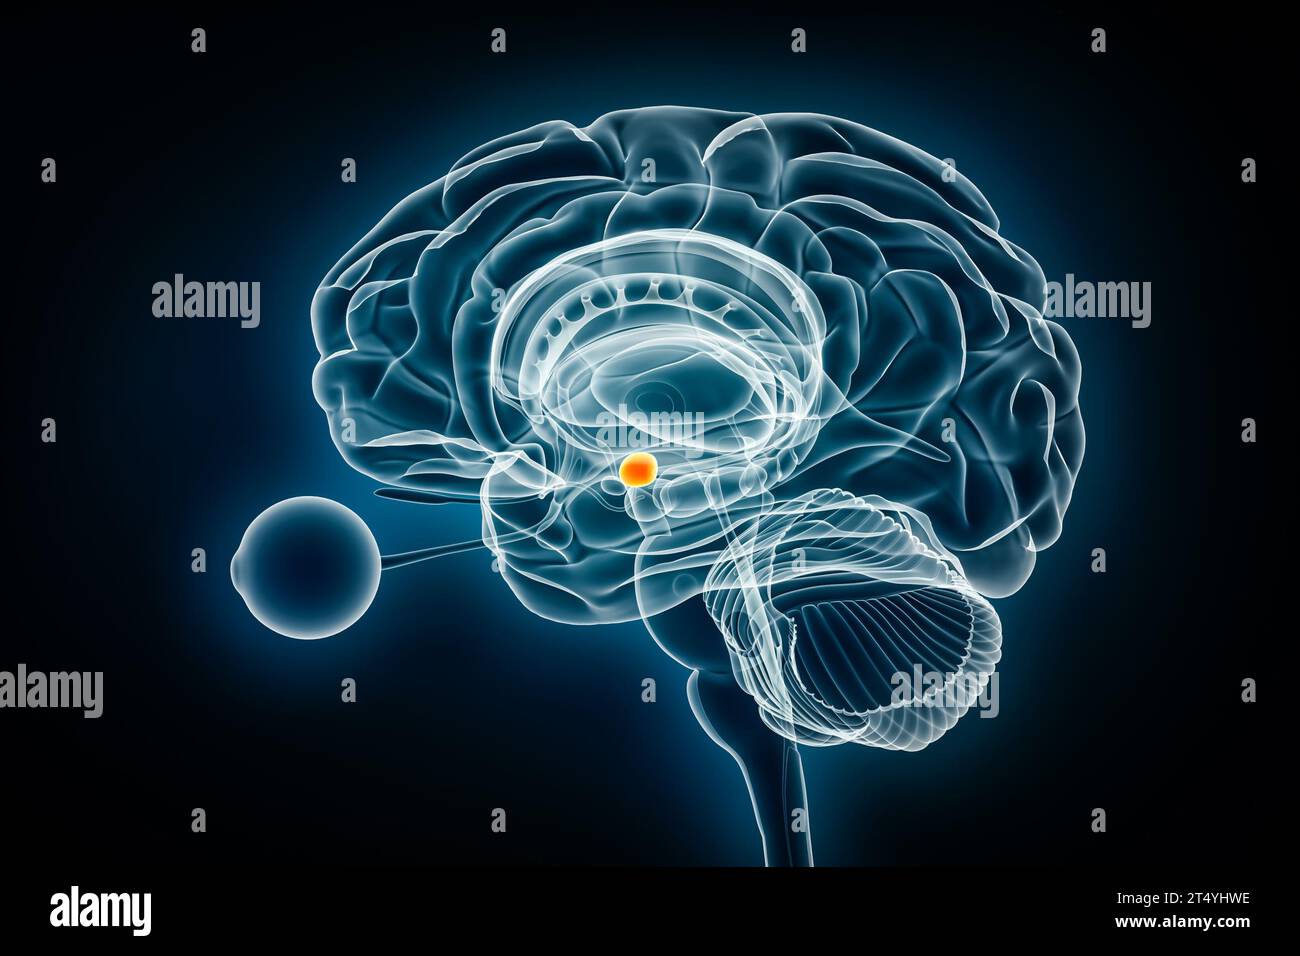 Röntgenologische Darstellung des zerebralen Amygdalaprofils in 3D-Darstellung. Menschliches Gehirn und limbisches System Anatomie, Medizin, Gesundheitswesen, Biologie, Wissenschaft, Neurosci Stockfoto